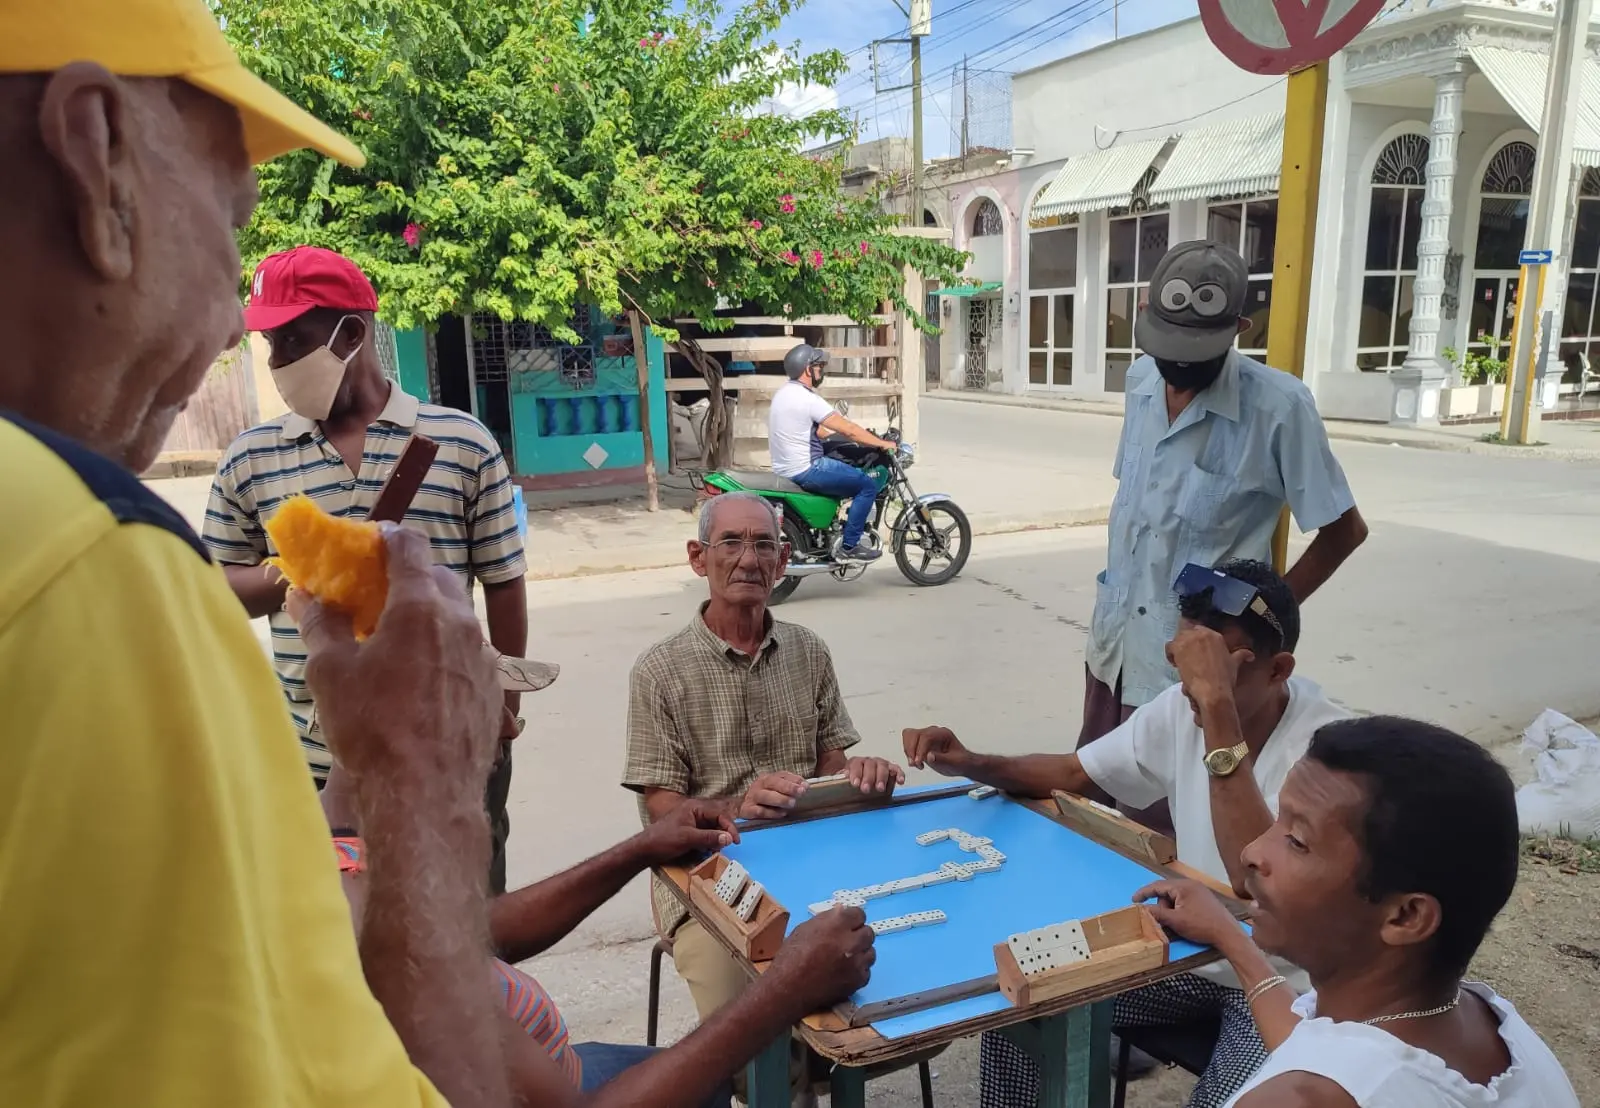 Giocatori di domino a Guantanamo (foto Tellini)